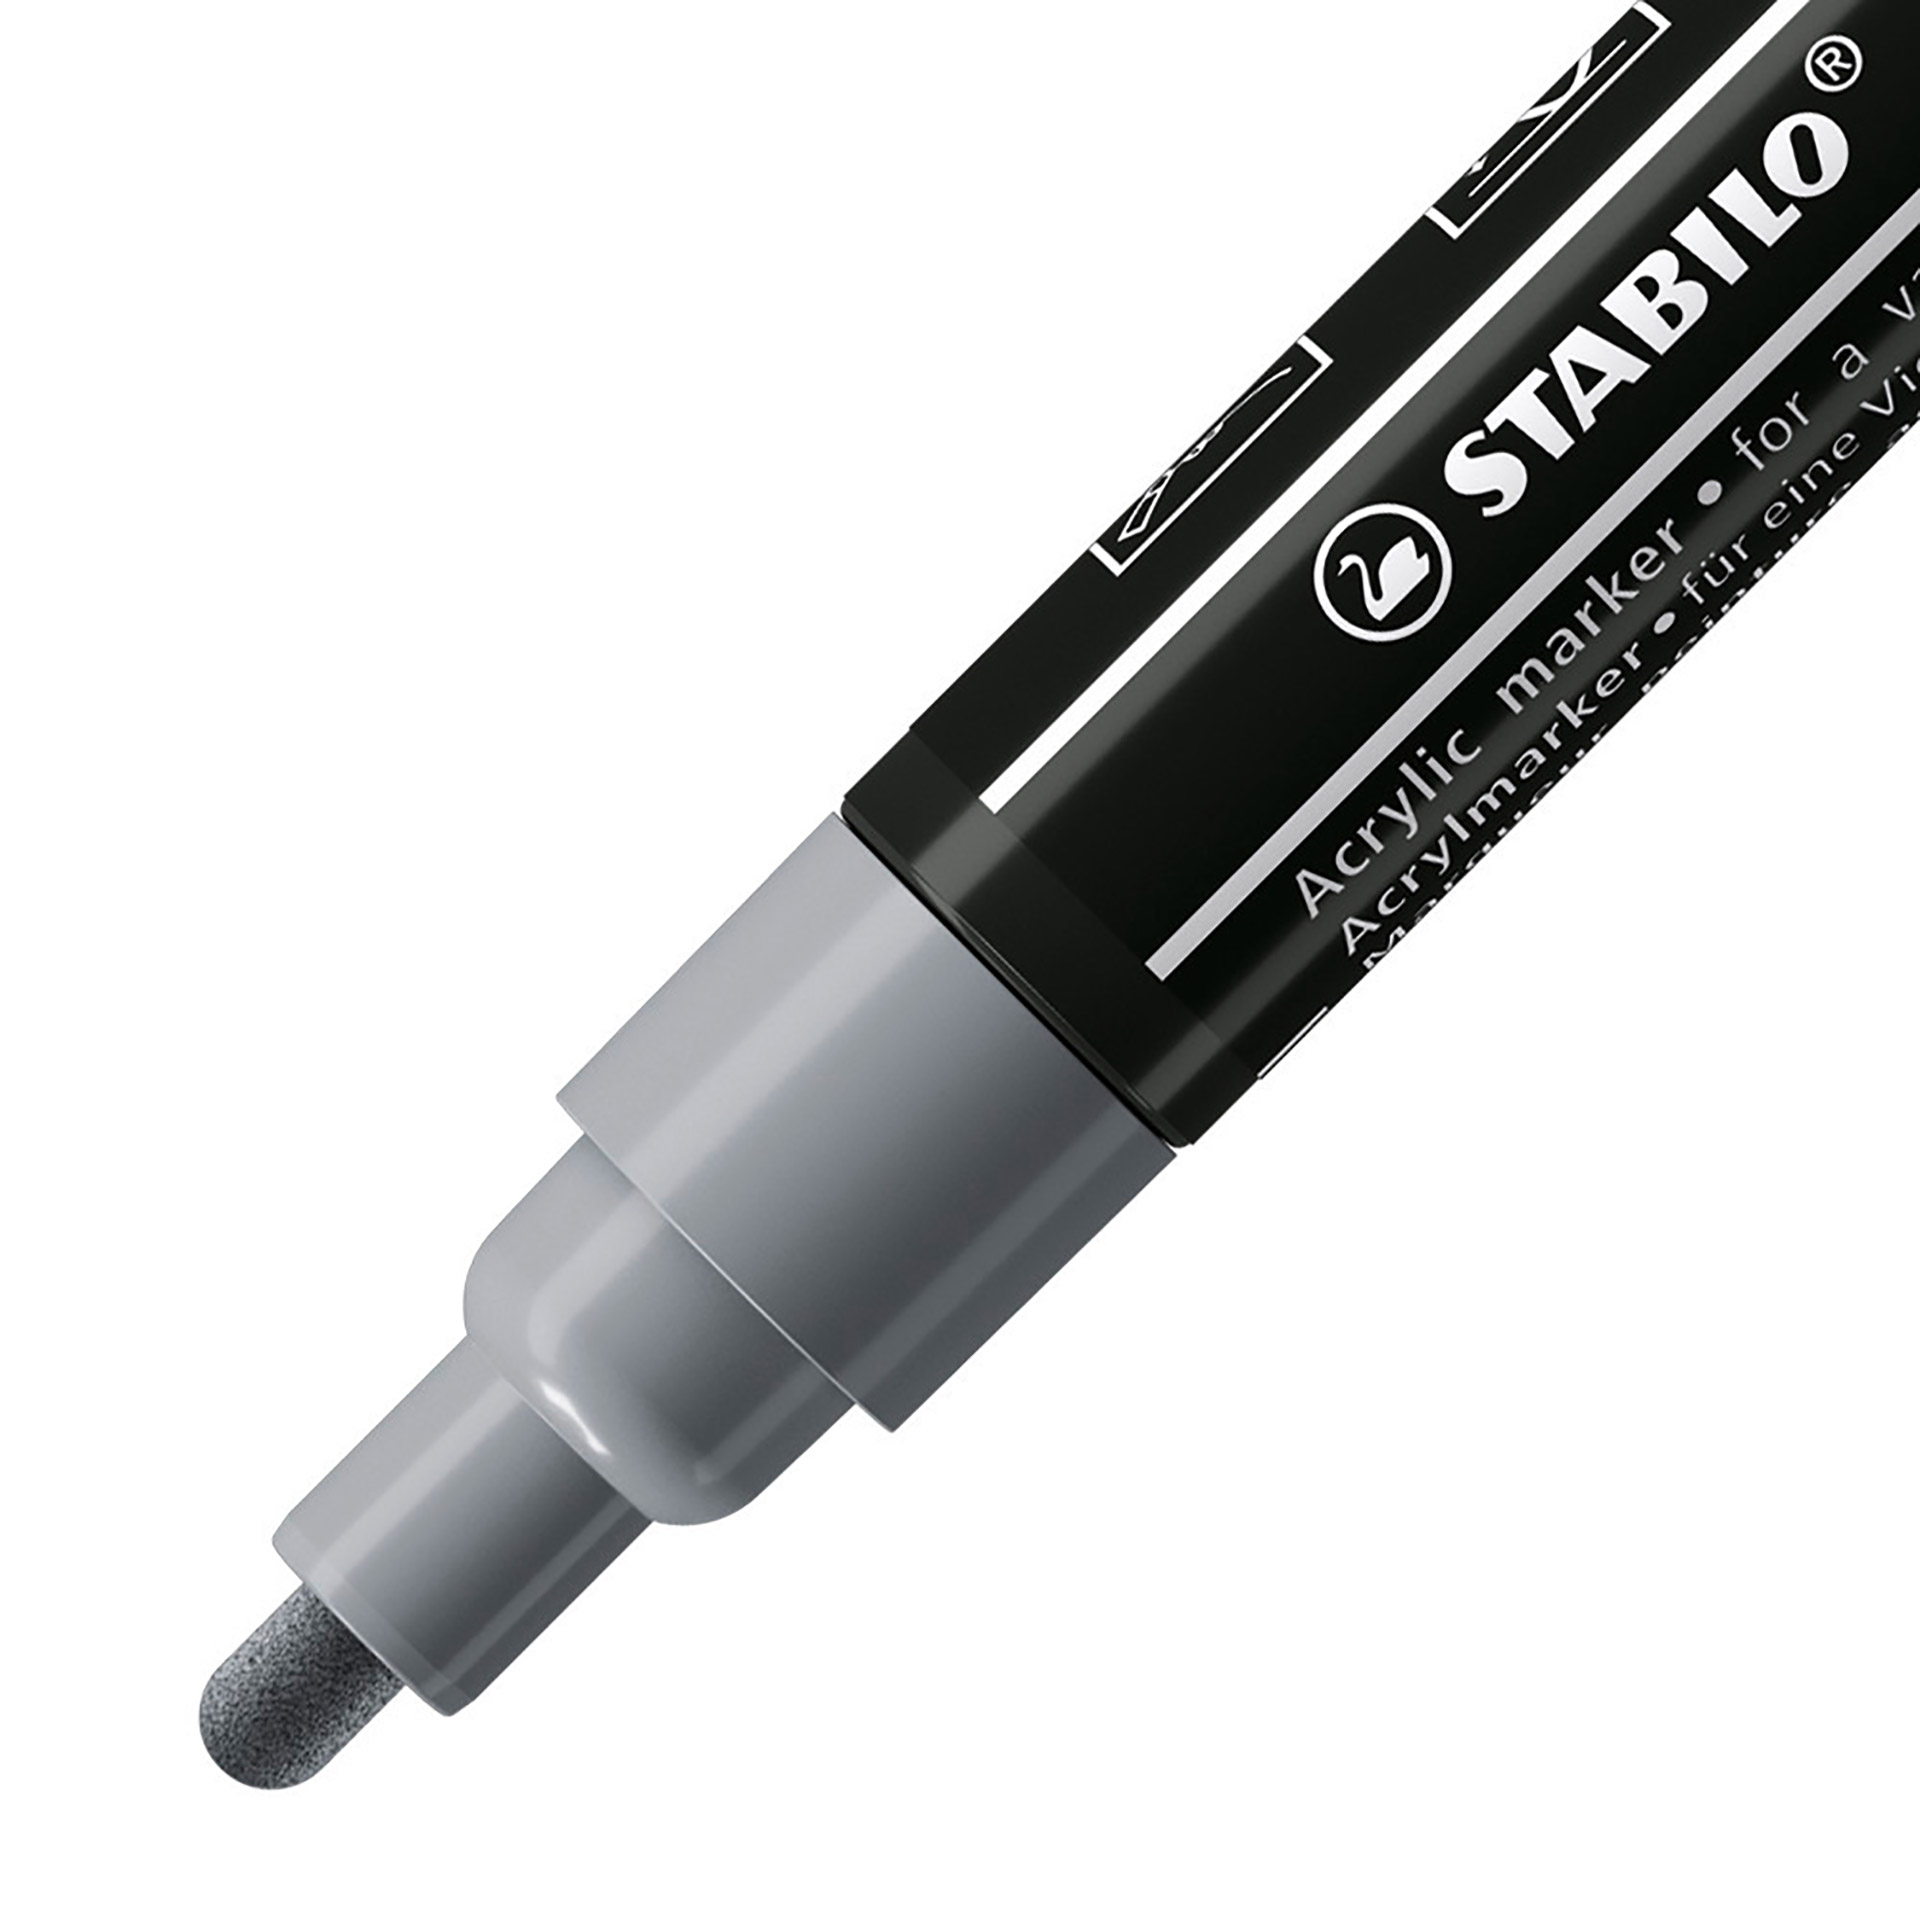 STABILO FREE Acrylic - T300 Punta rotonda 2-3mm - Confezione da 5 - Grigio scuro, , large